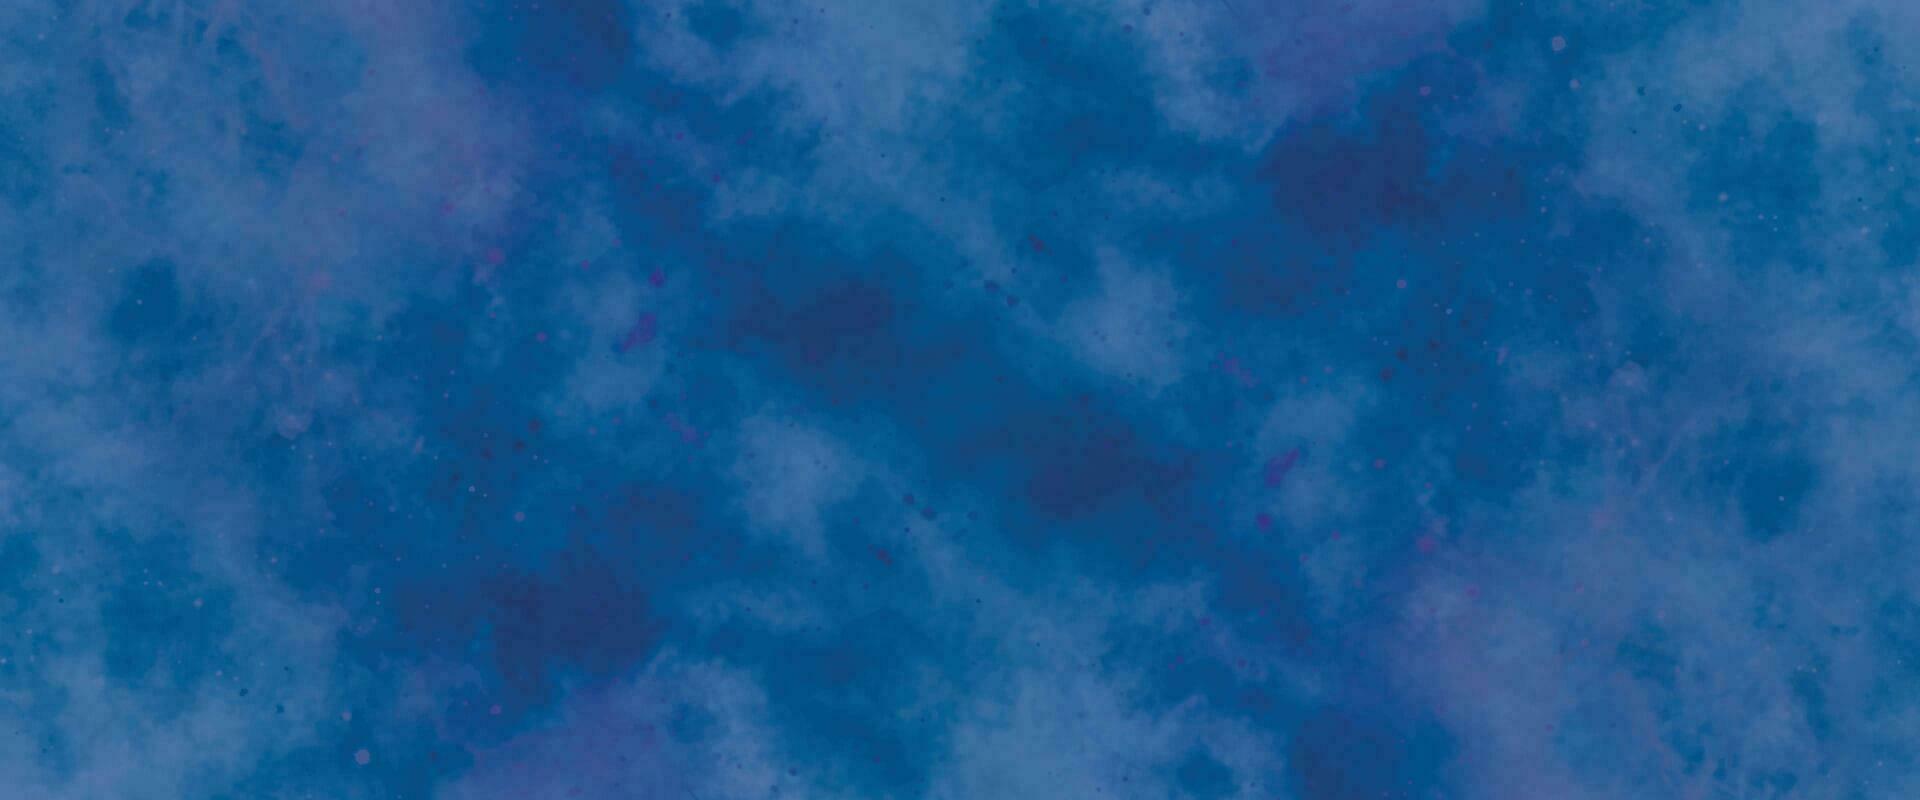 abstrakt blå vattenfärg lutning måla grunge textur bakgrund vektor